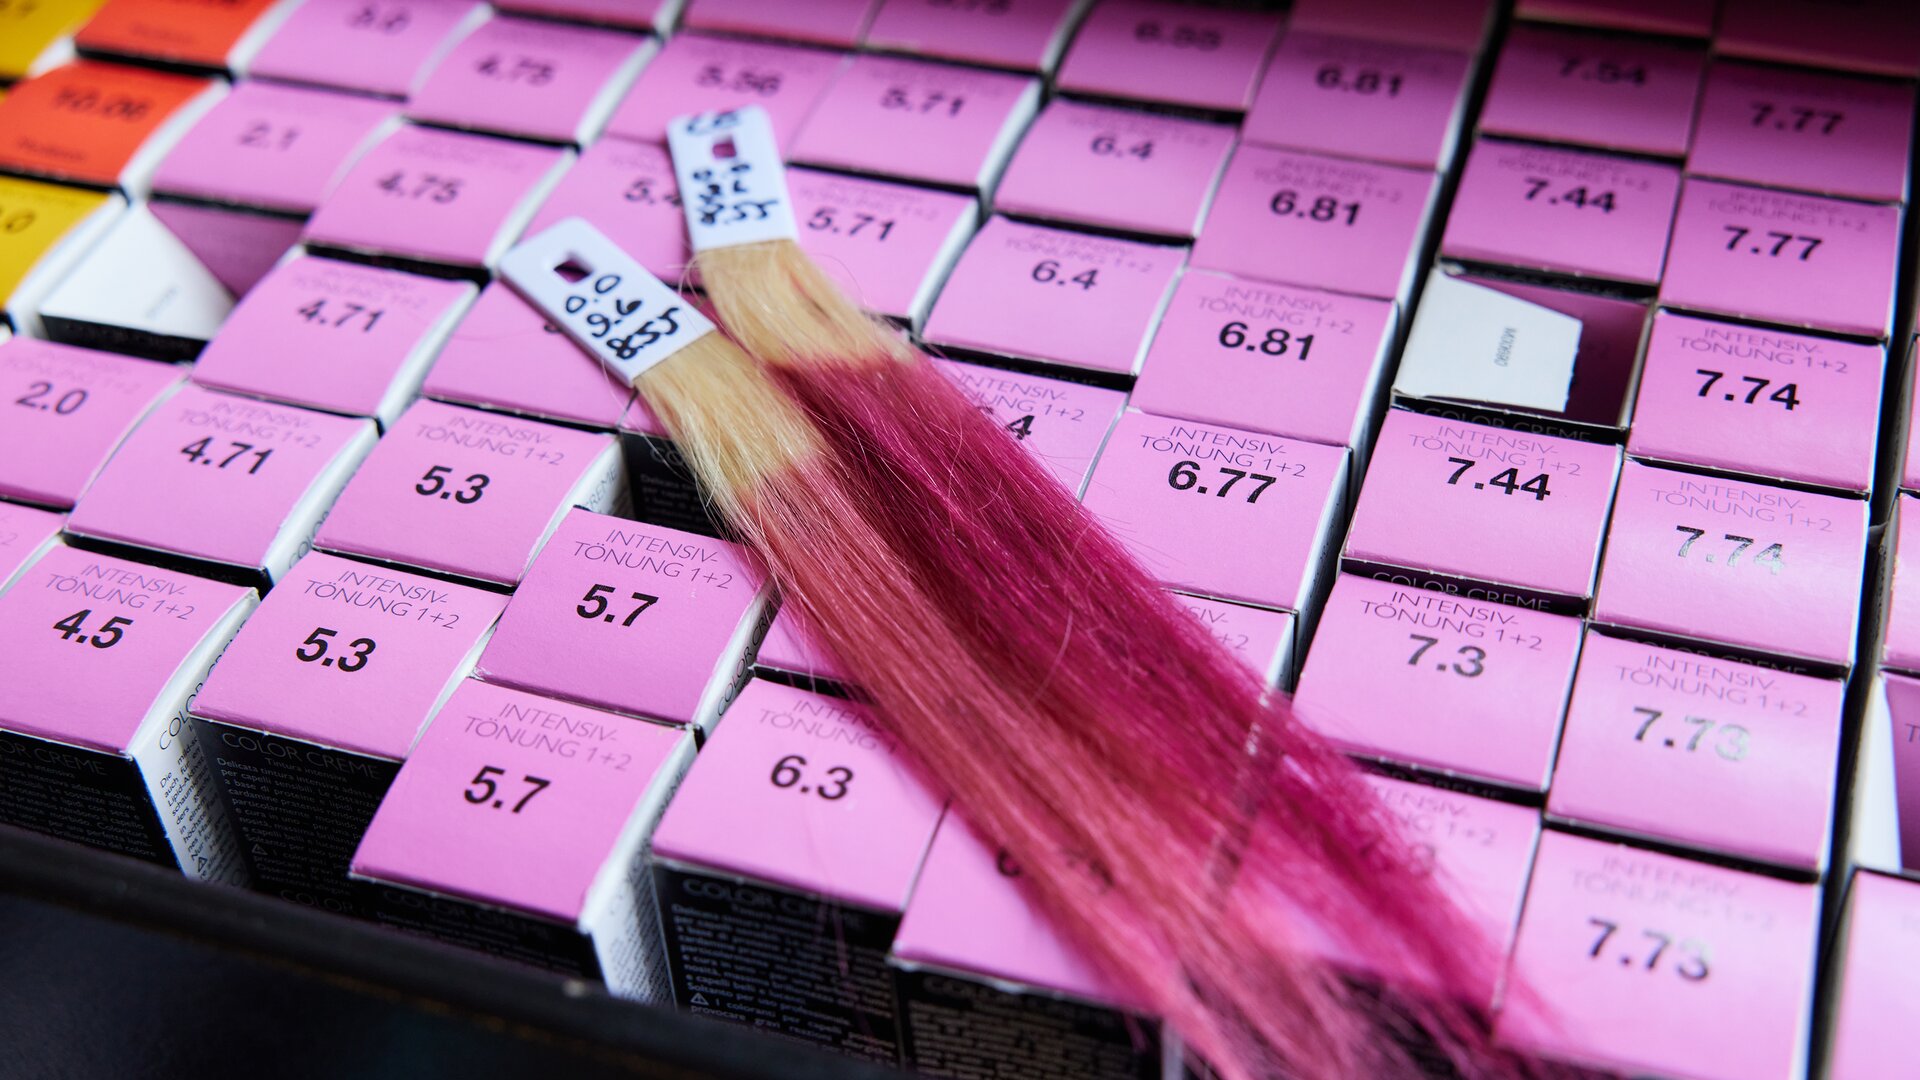 Nachaufnahme pinkfarbener Produktpackungen von professioneller ALCINA Haarfarbe mit oben zwei aufliegenden, pink eingefärbten Haarsträhnen.